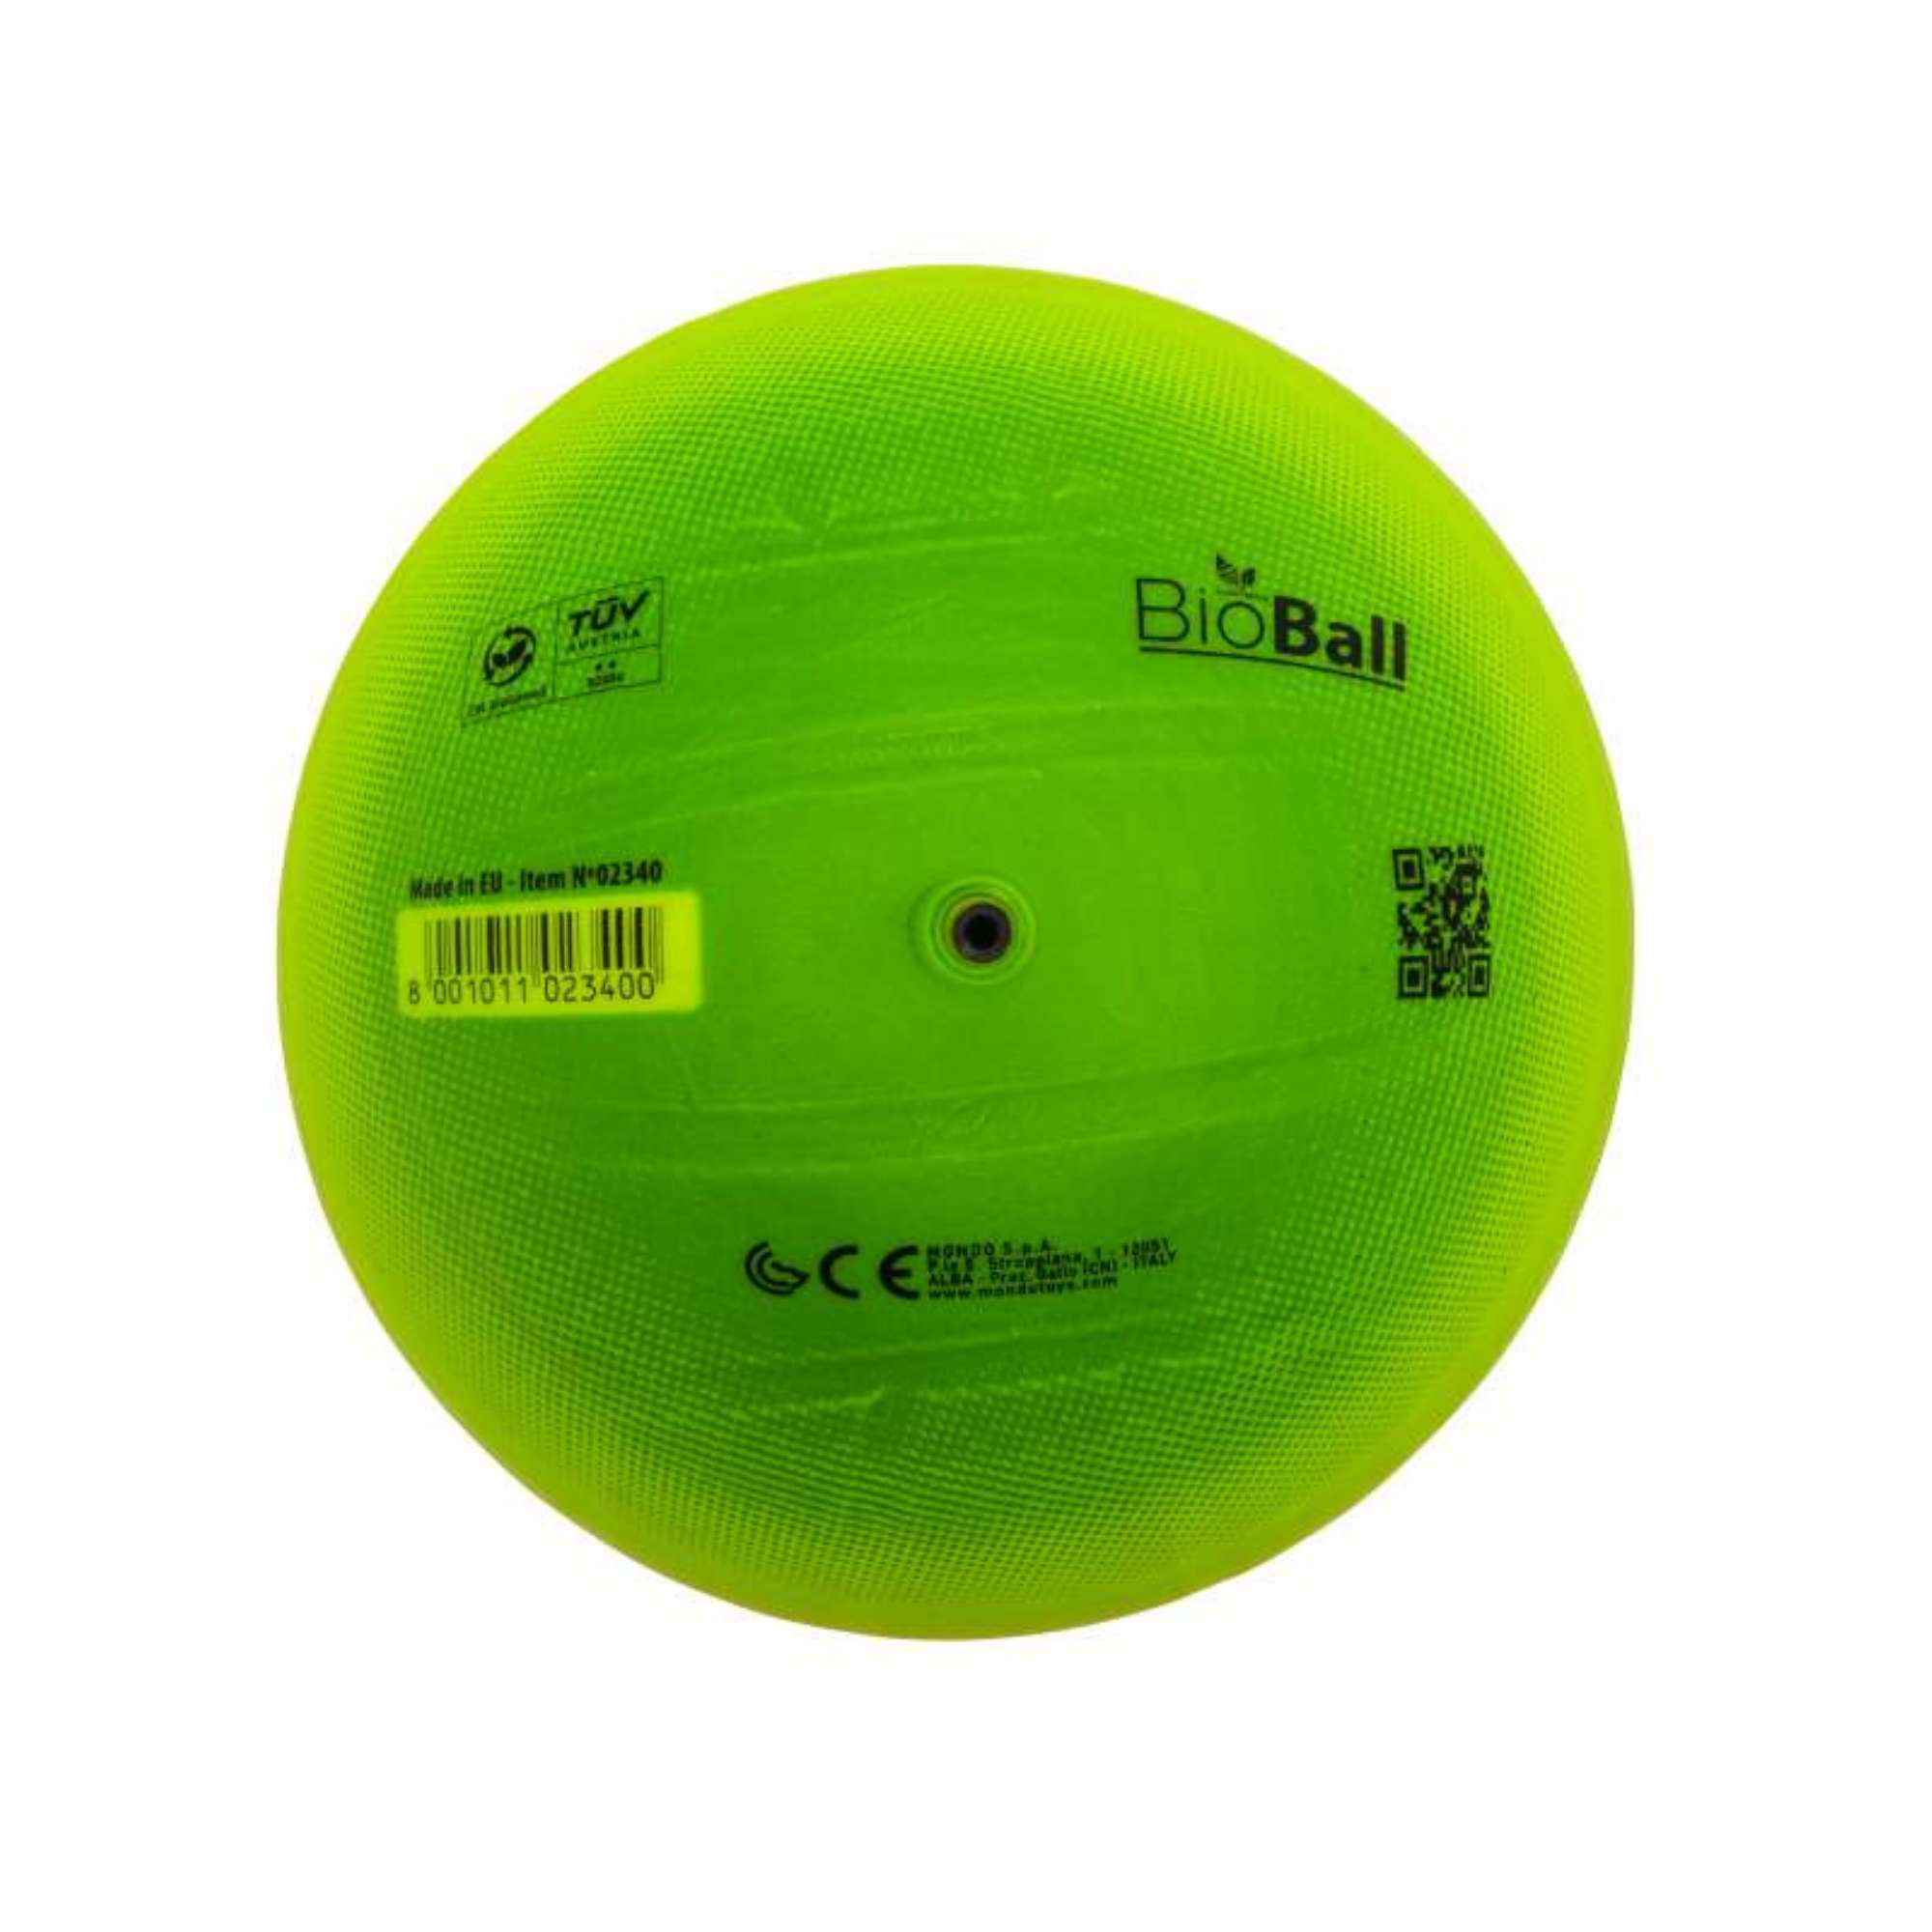 Kickball Gonflable en PVC, Ballon de Plage Arc-En-Ciel Multicolore, Balle  Molle de Football, Balles de Terrain de Jeu Arc-En-Ciel De 8,5 Pouces pour